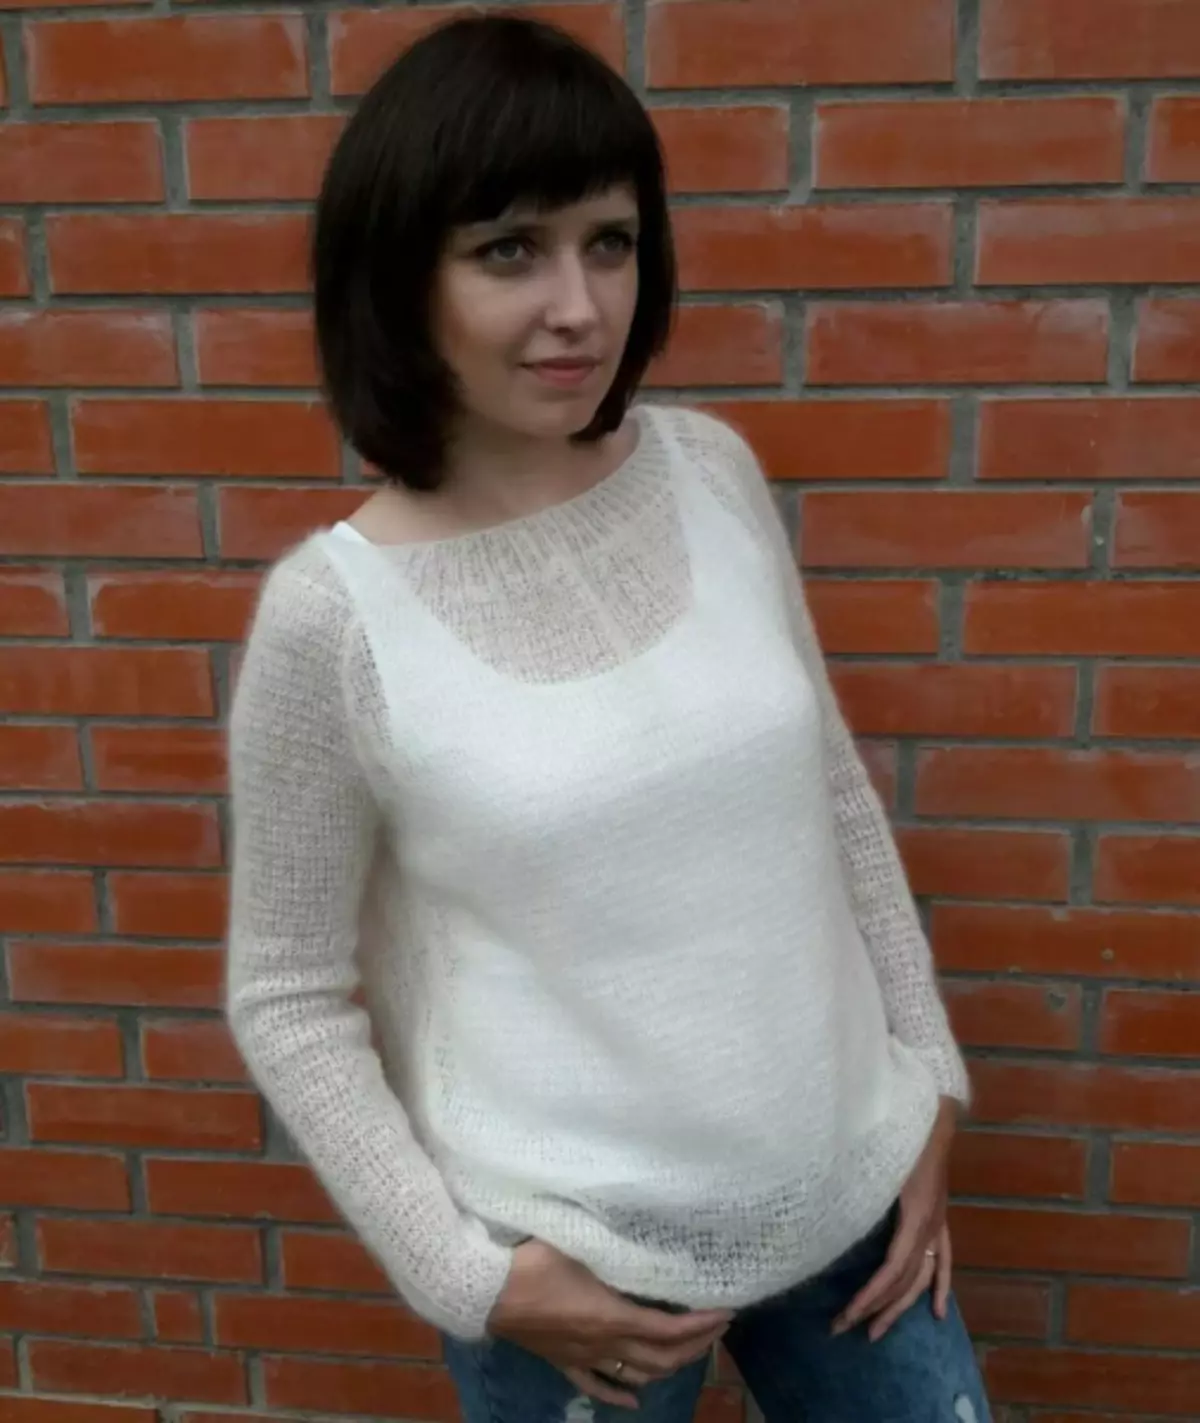 Džemper od bijelog pletenog: ženska i muška opcija sa fotografijama i video zapisima